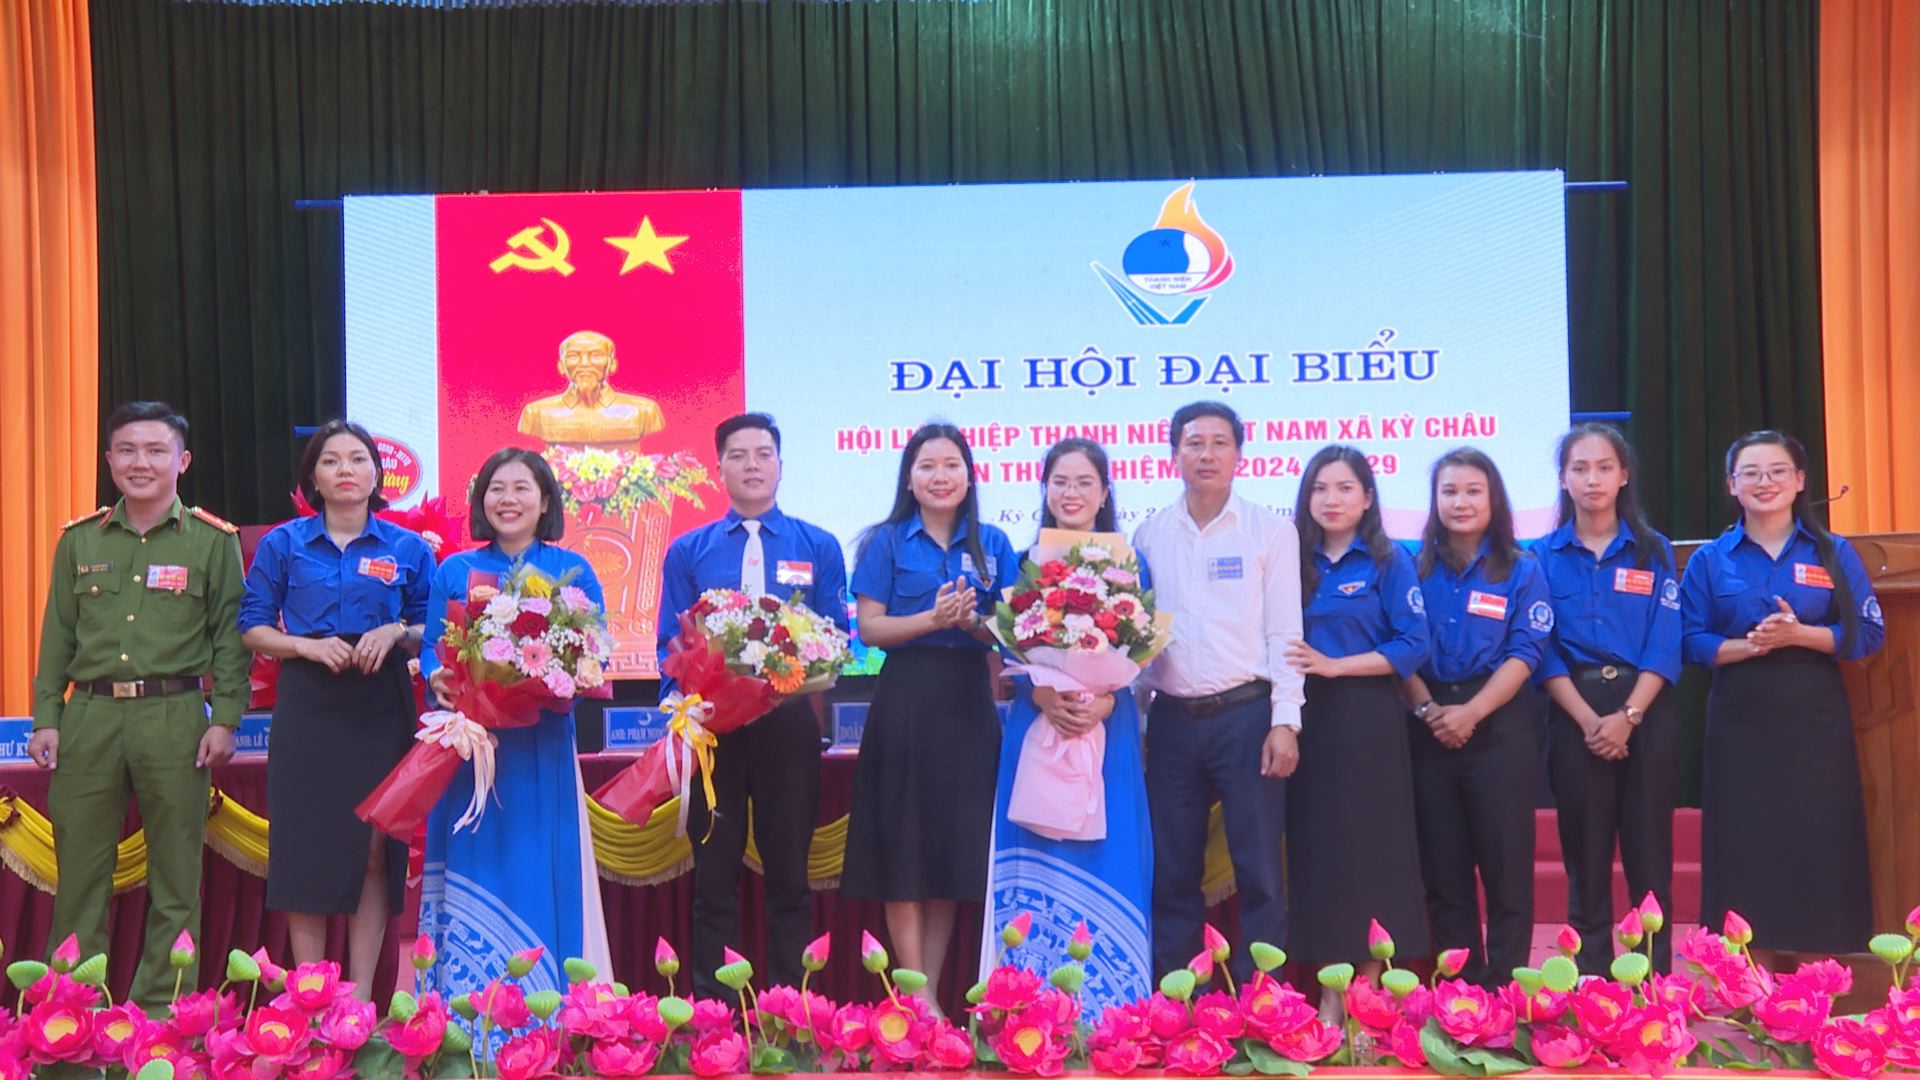 Đại hội đại biểu Hội LHTN Việt Nam xã Kỳ Châu lần thứ V nhiệm kỳ 2024 -2029